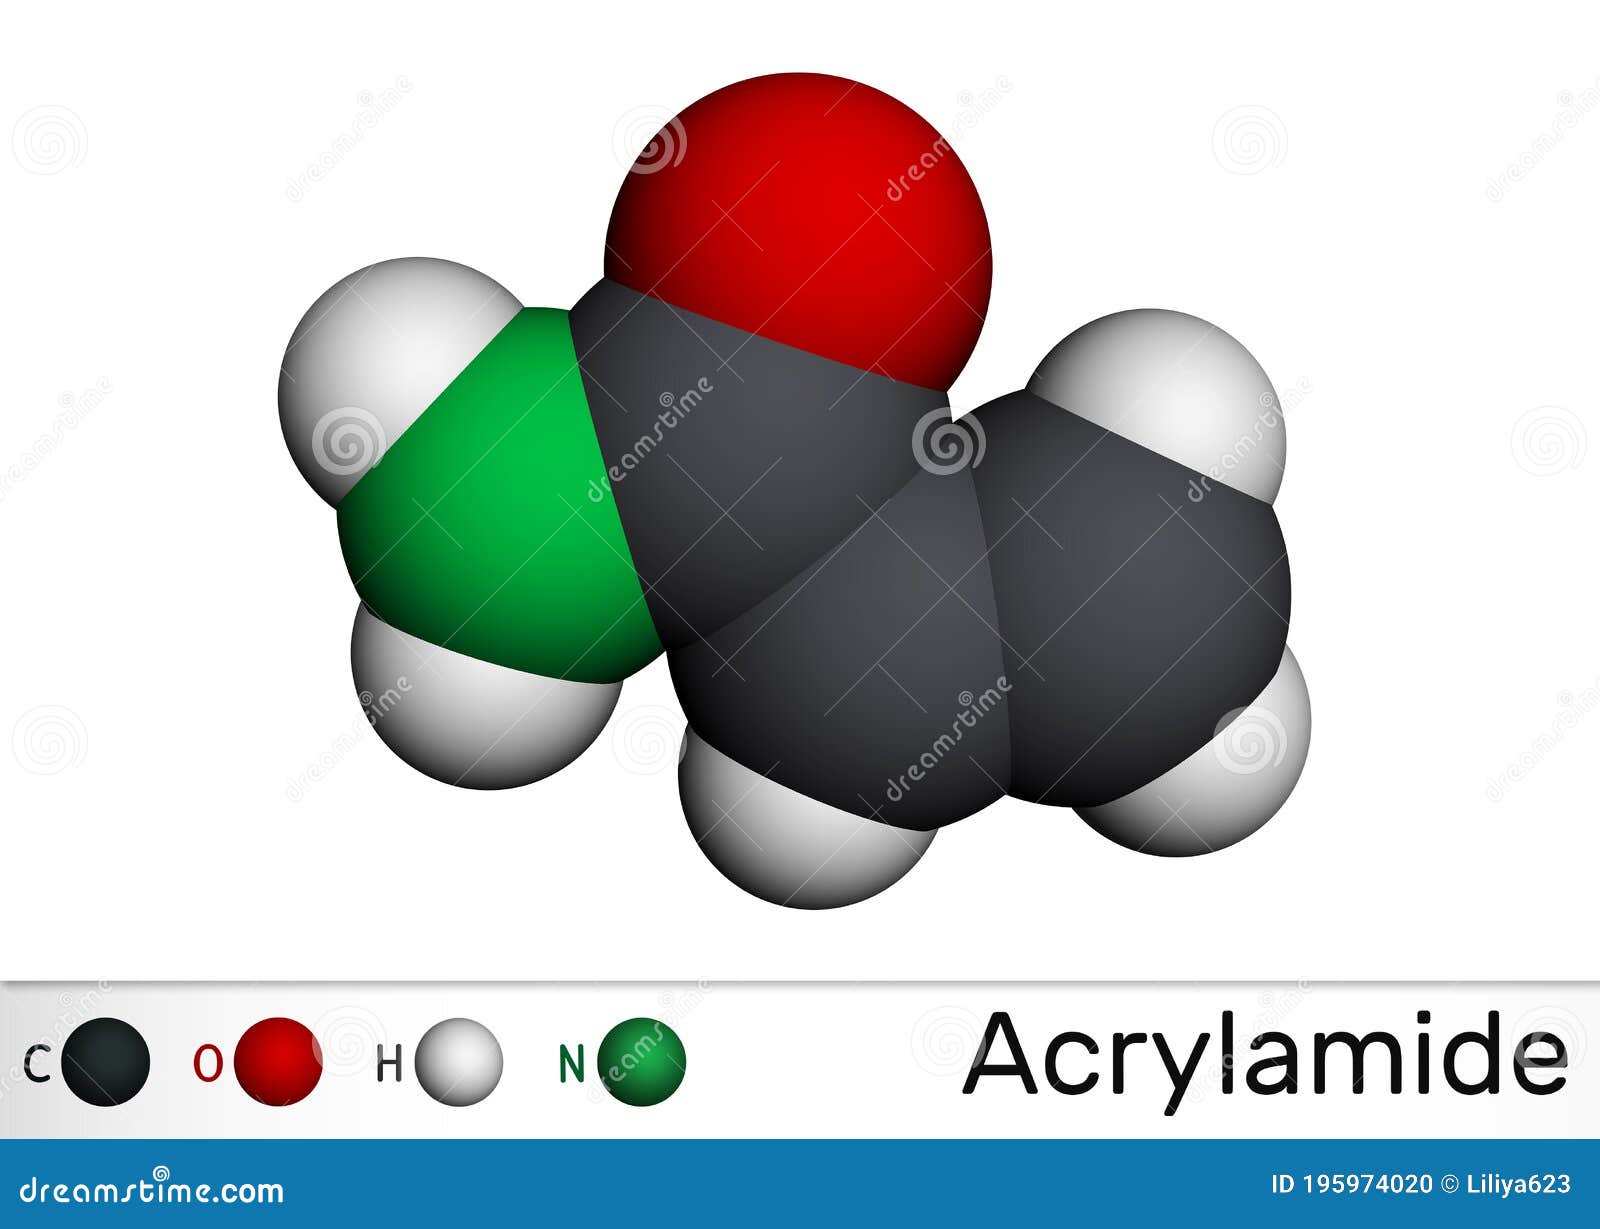 acrylamide, acr, acrylic amide molecule. it is as a precursor to polyacrylamides. molecular model